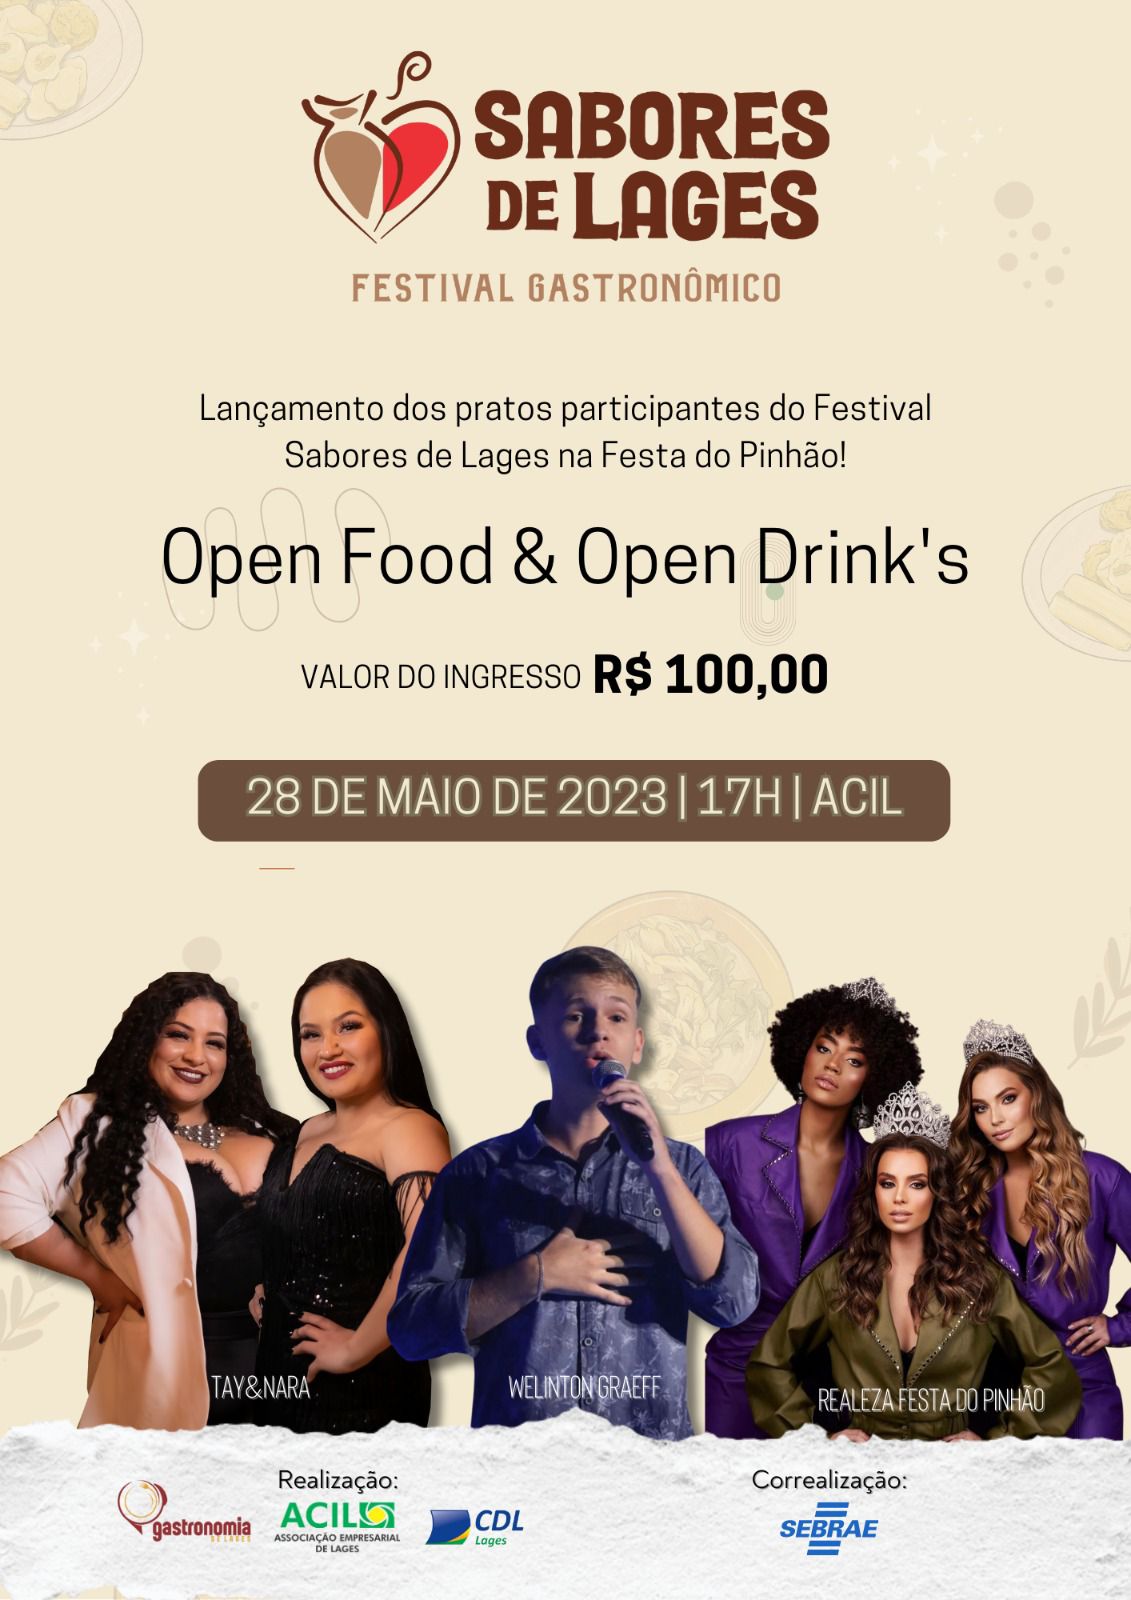 Lançamento dos pratos participantes do Festival Gastronômico Sabores de Lages